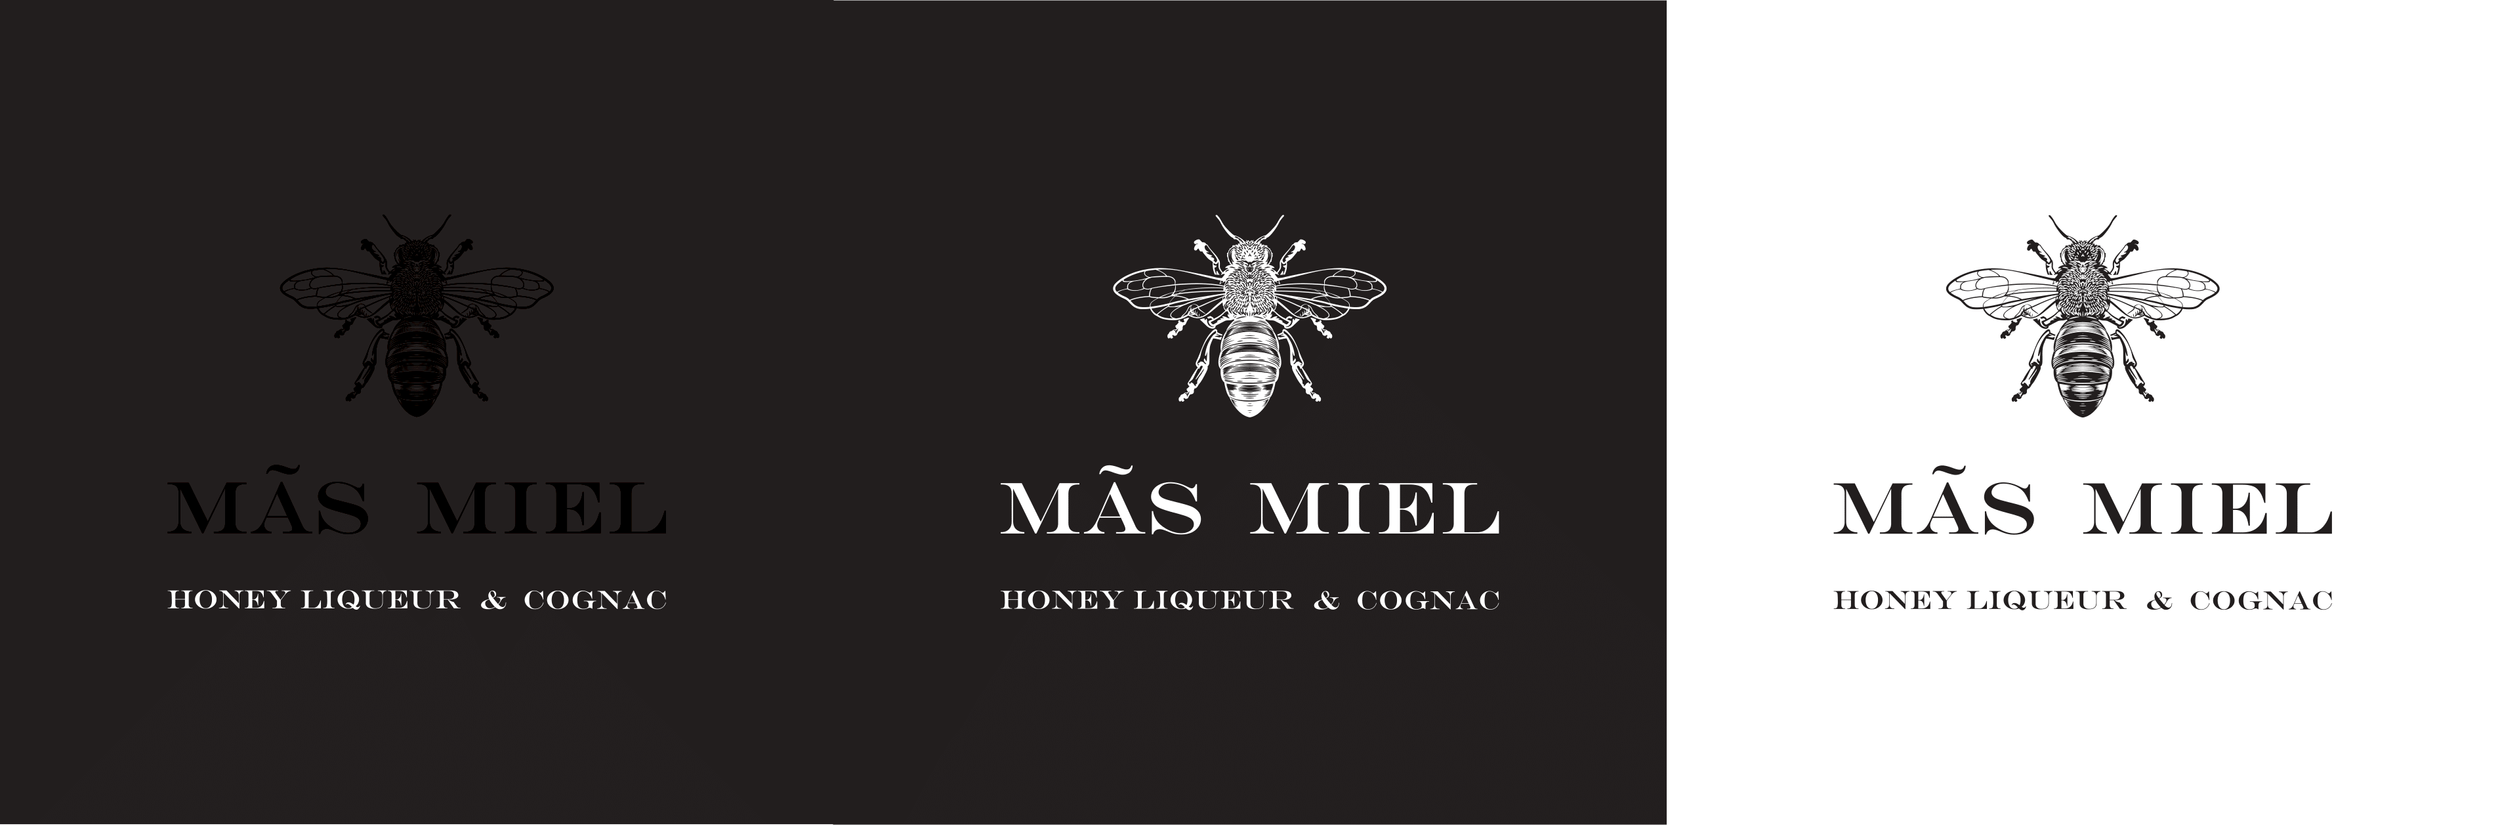 Mas Miel - Logo-1.png